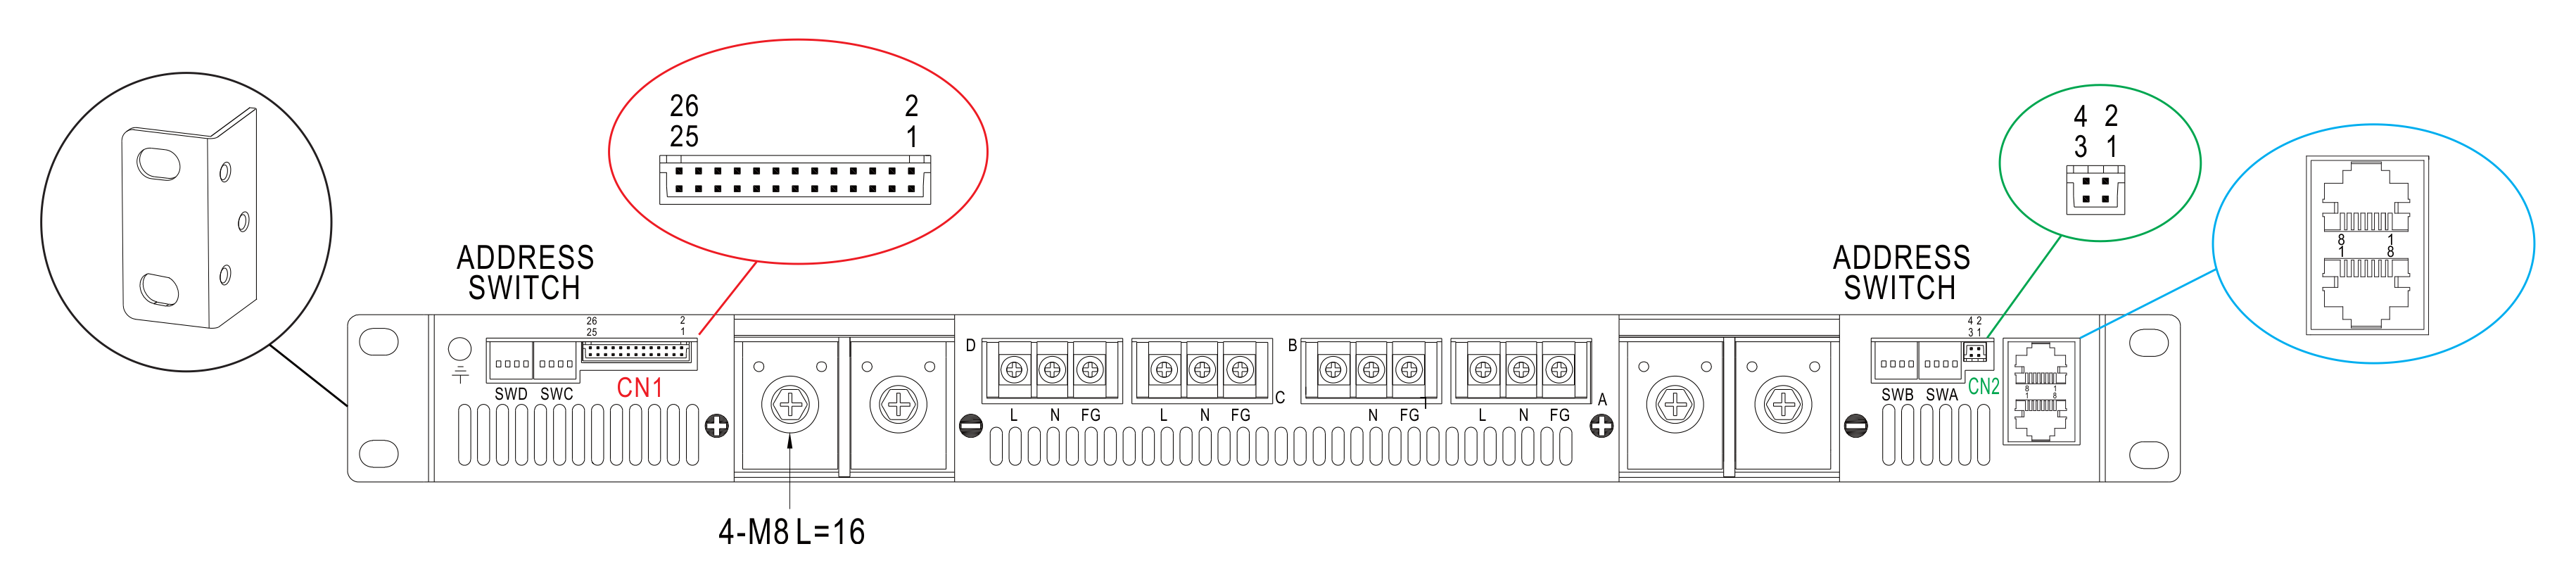 Рис. 16. Коммутационная панель rack-контейнера DHP-1U